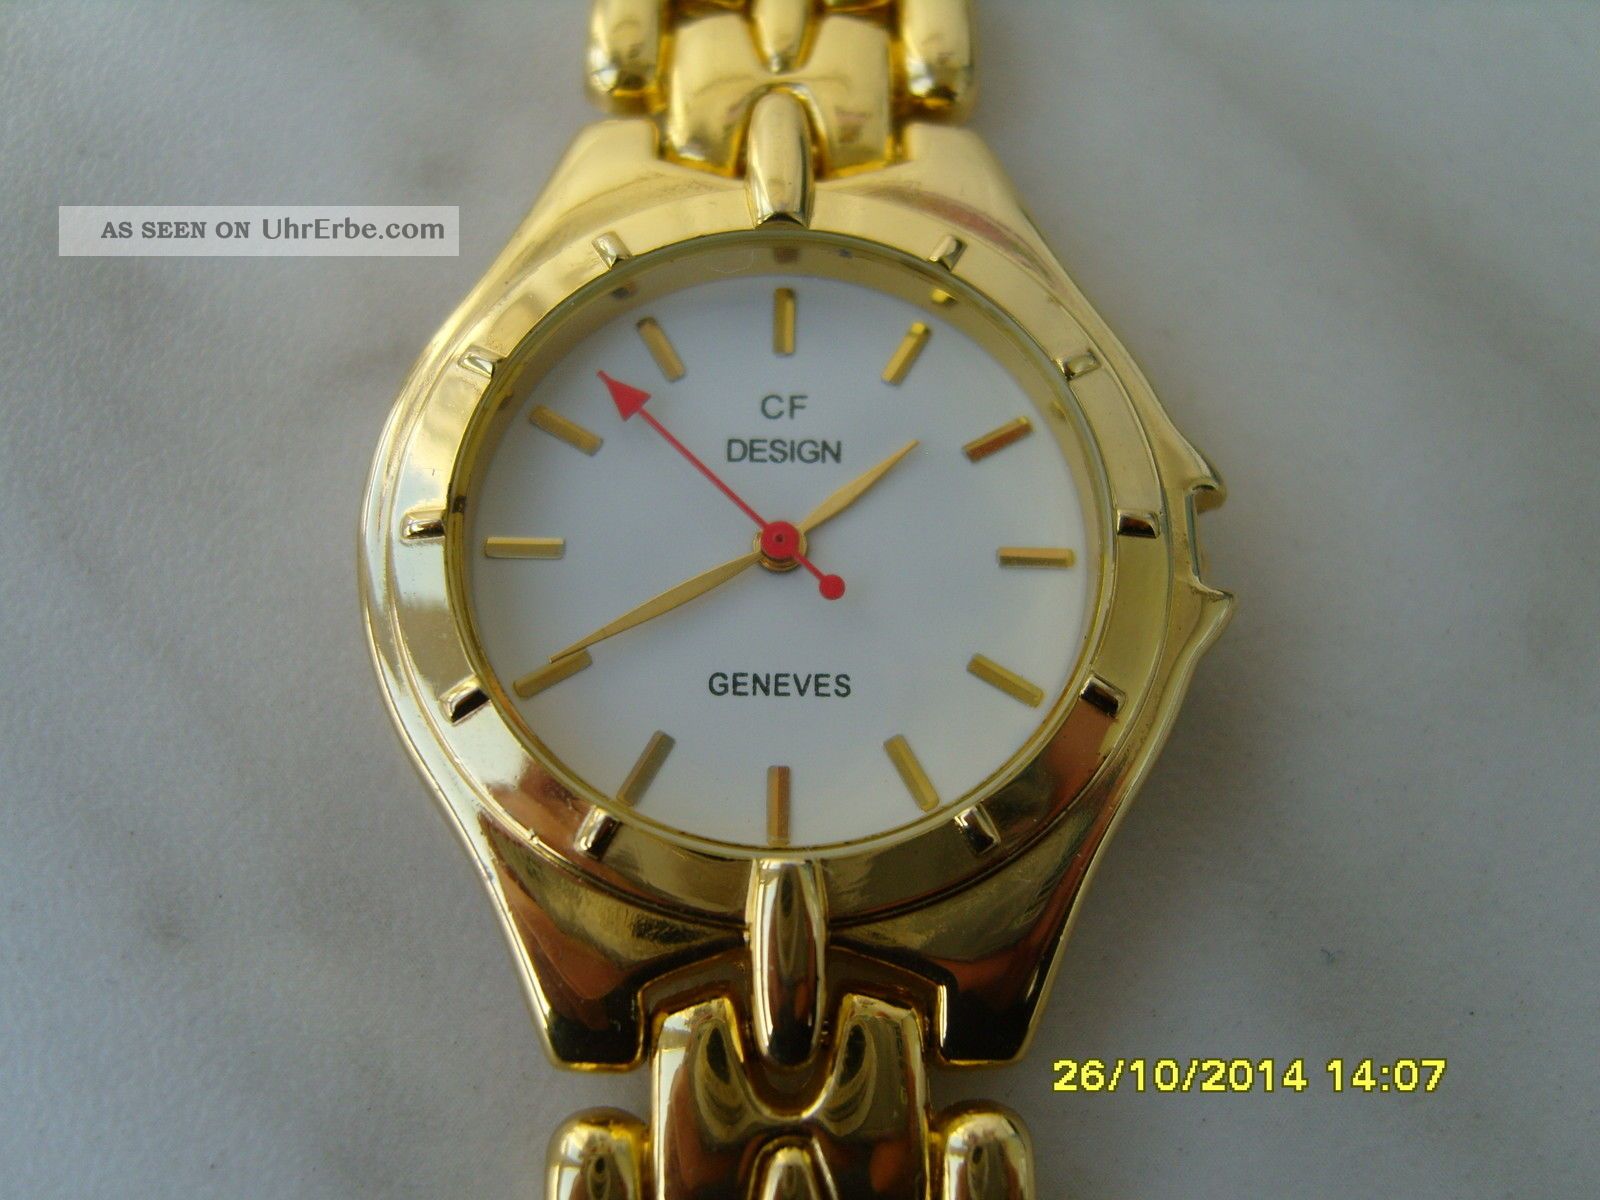 Damen Armband Uhr Geneves Cf Design - Neuwertig Armbanduhren Bild